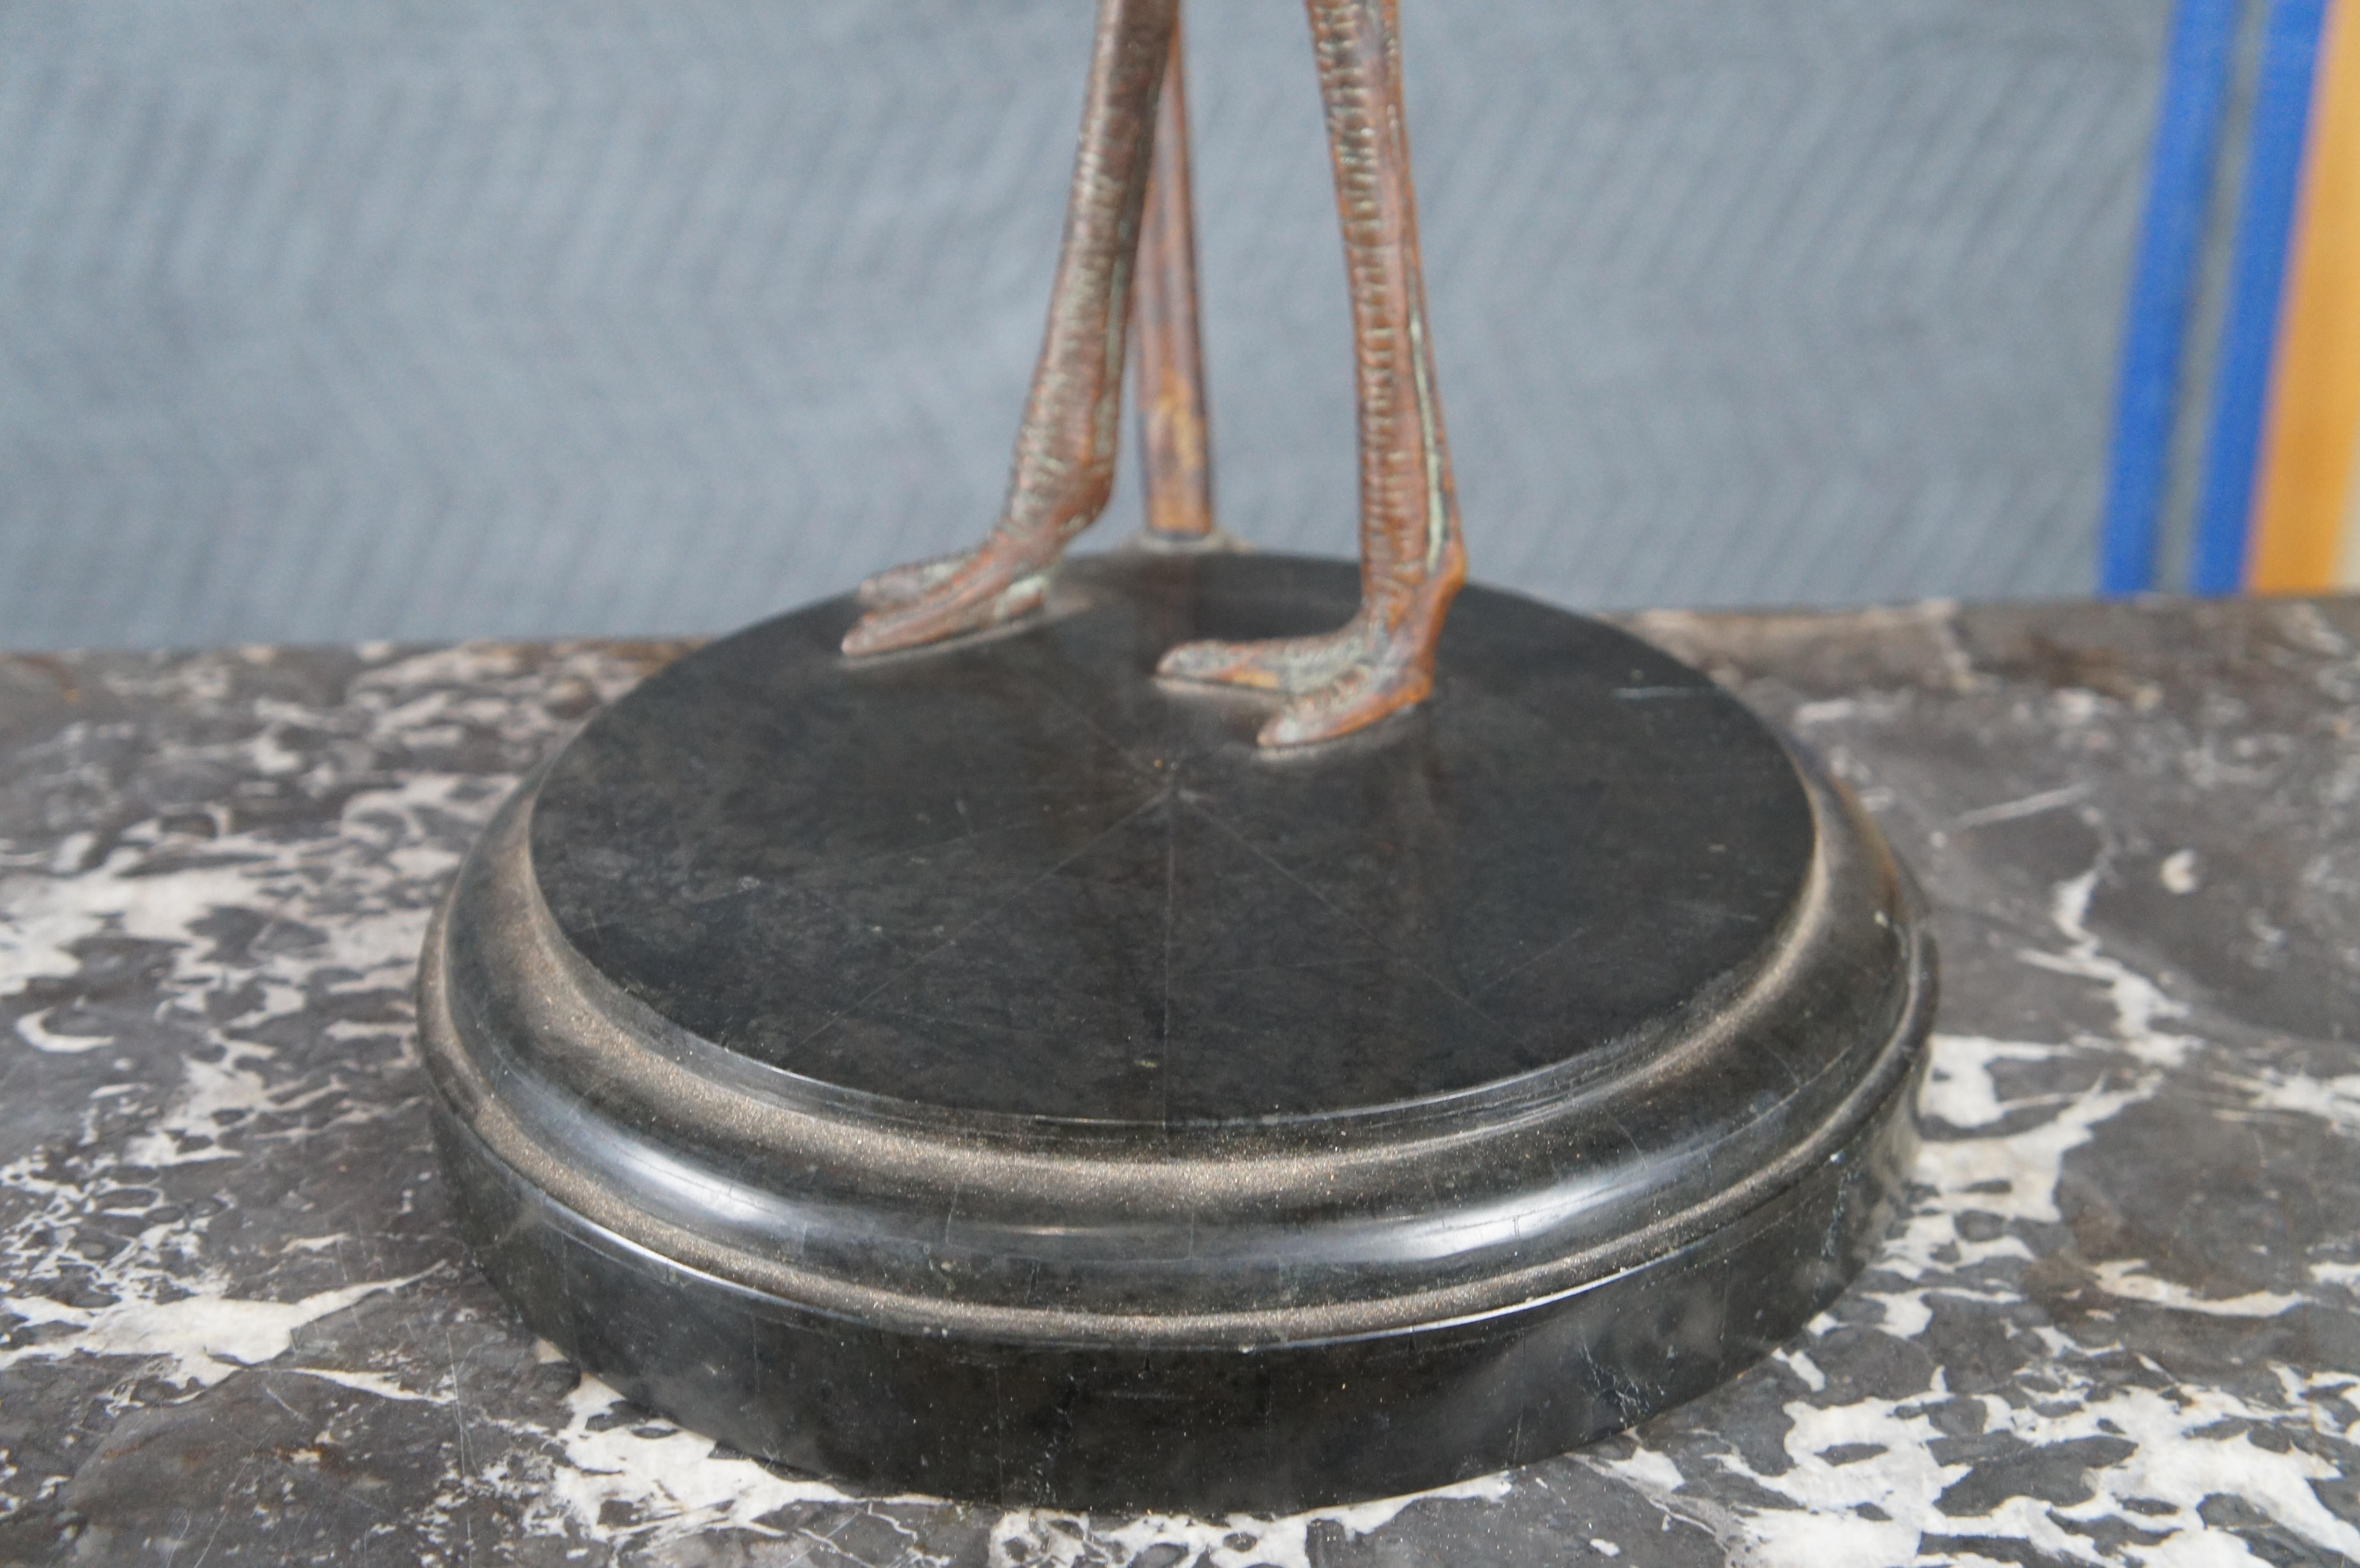 Vintage Maitland Smith Bronze Affen Reiter Strauß Tischlampe Lederschirm 39